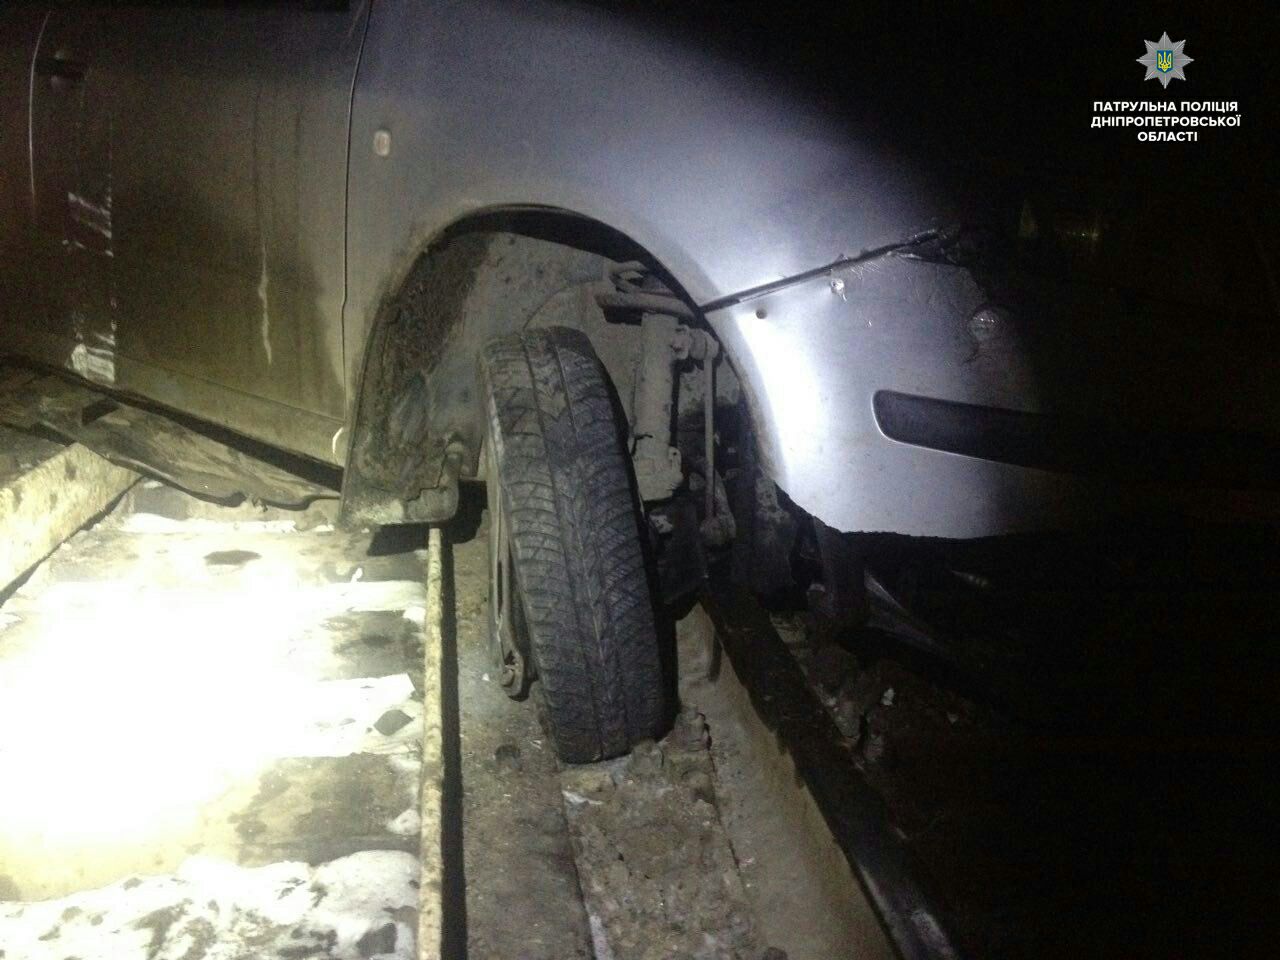 Новость - События - Голову вскружило: на Самарском спуске машина слетела с трассы на рельсы